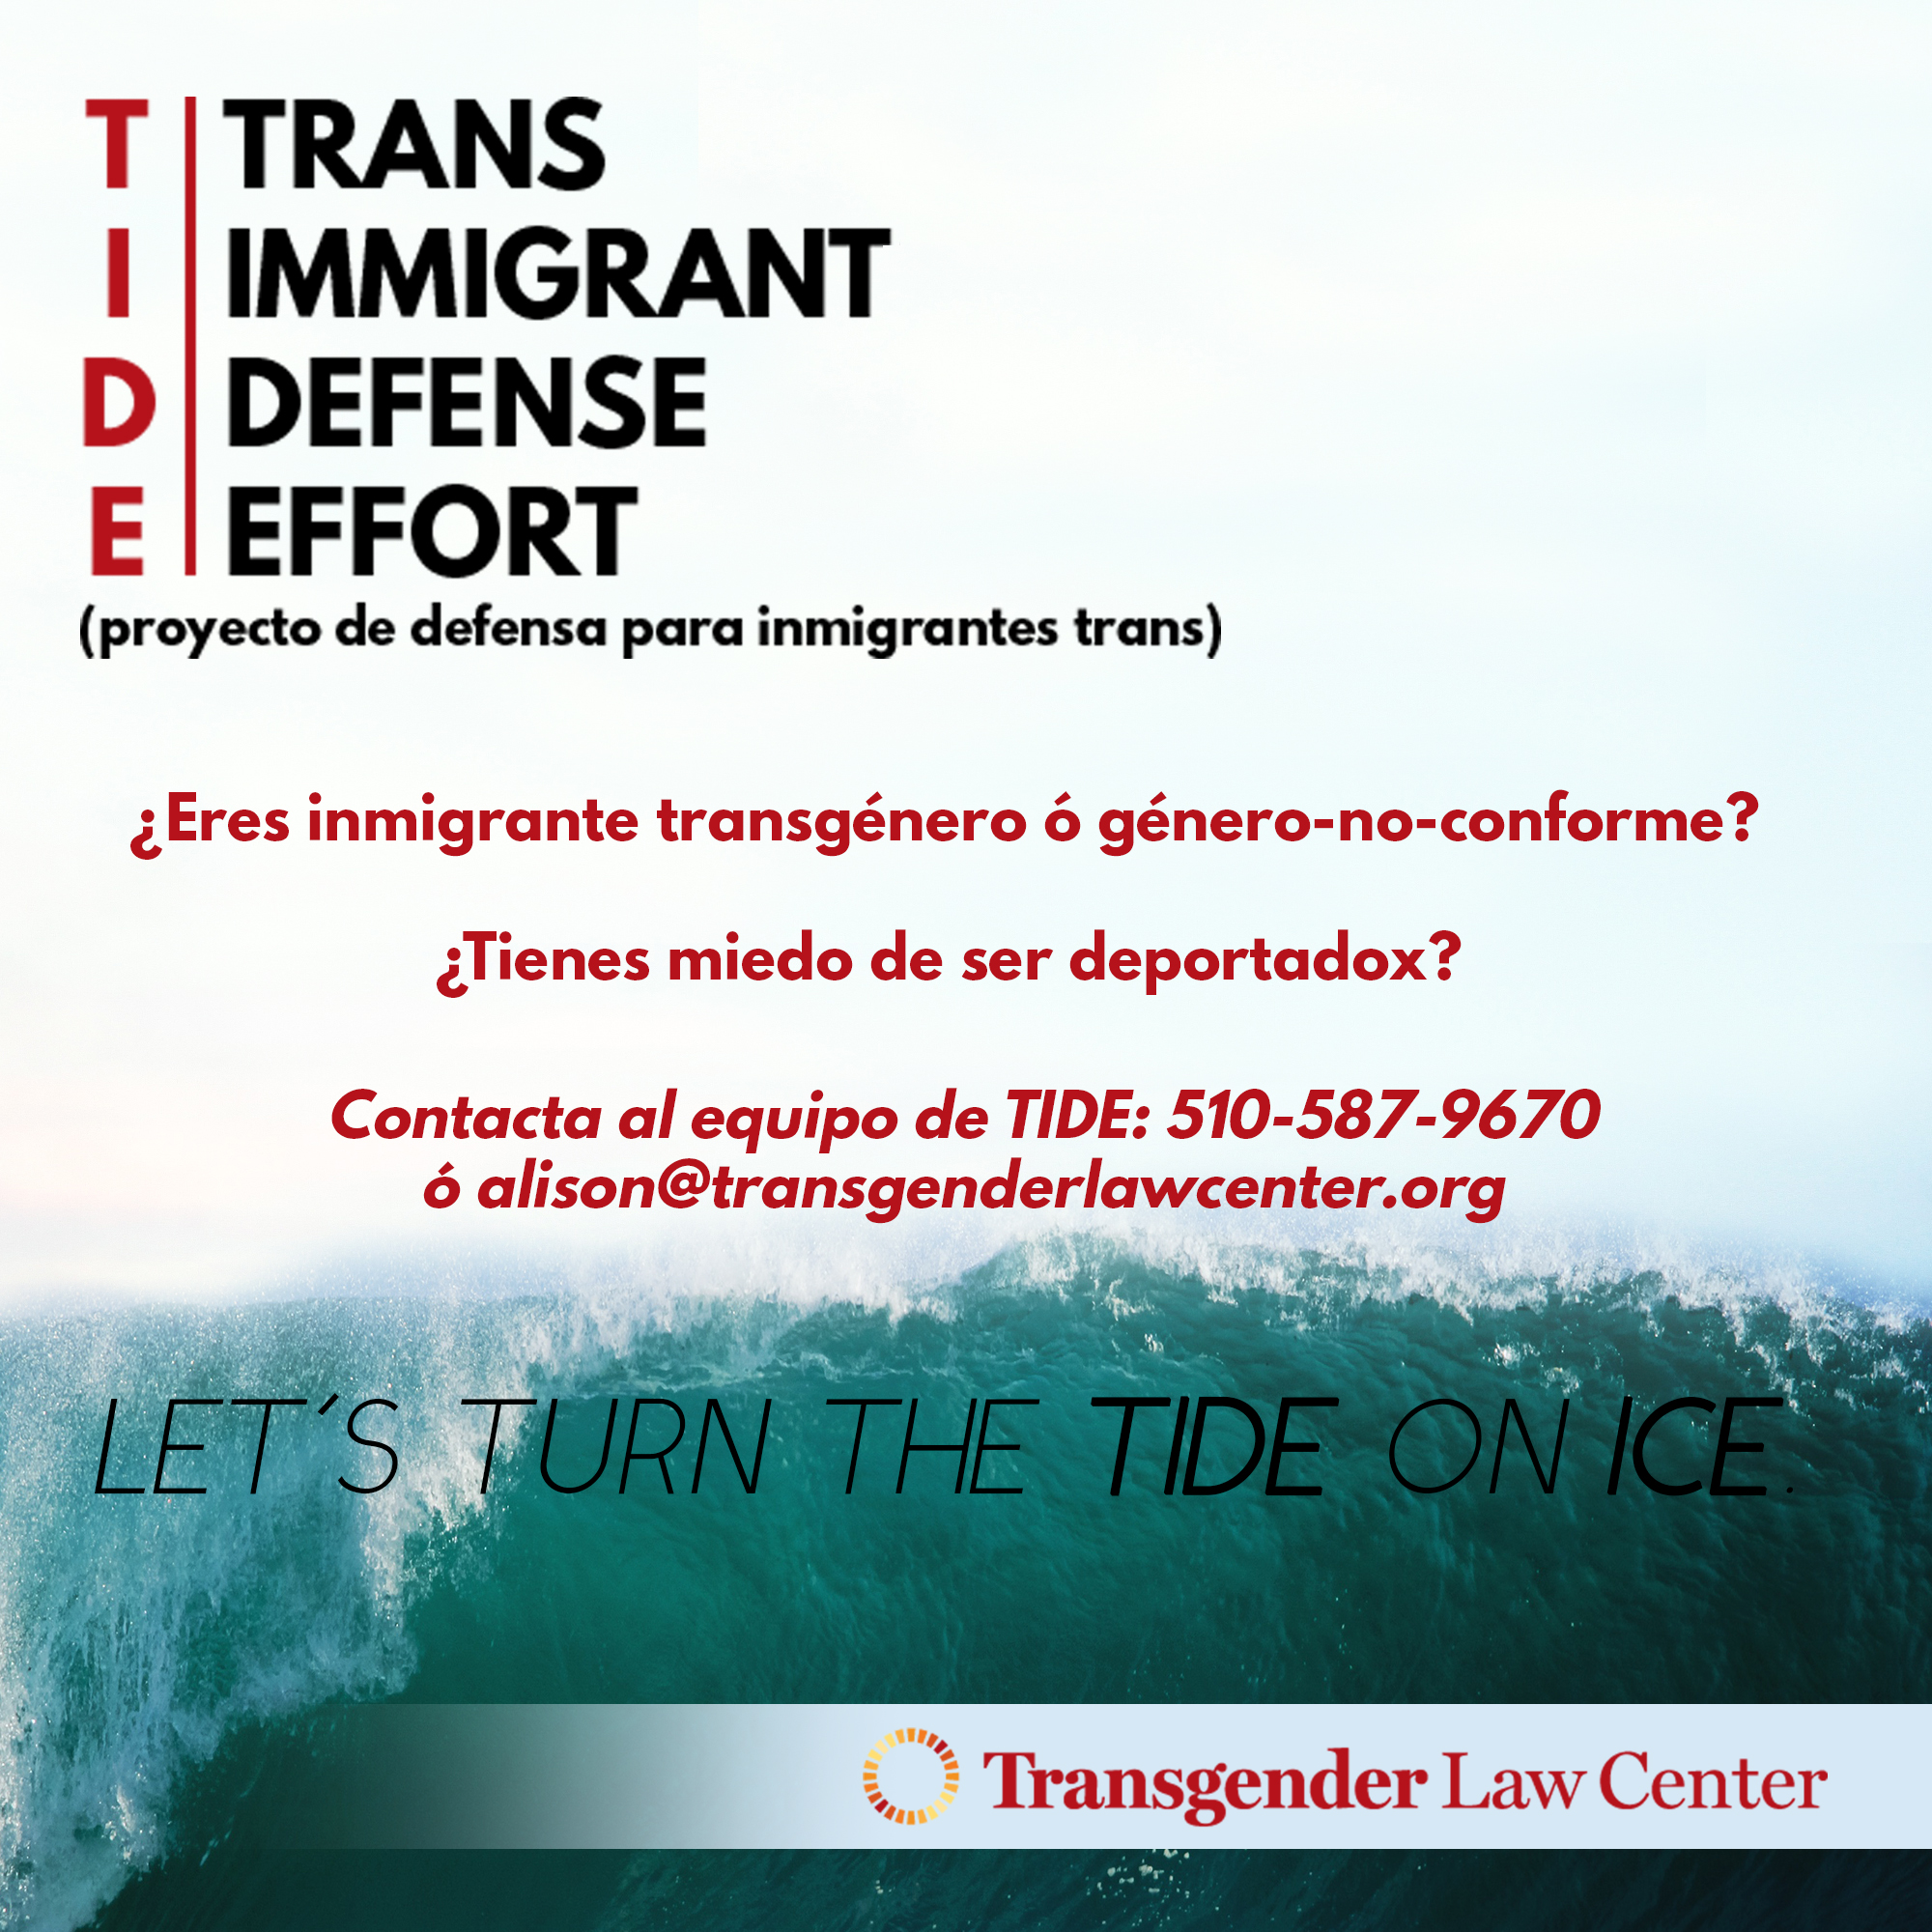 Nuevo programa ampliará la respuesta legal de emergencia para inmigrantes transgénero